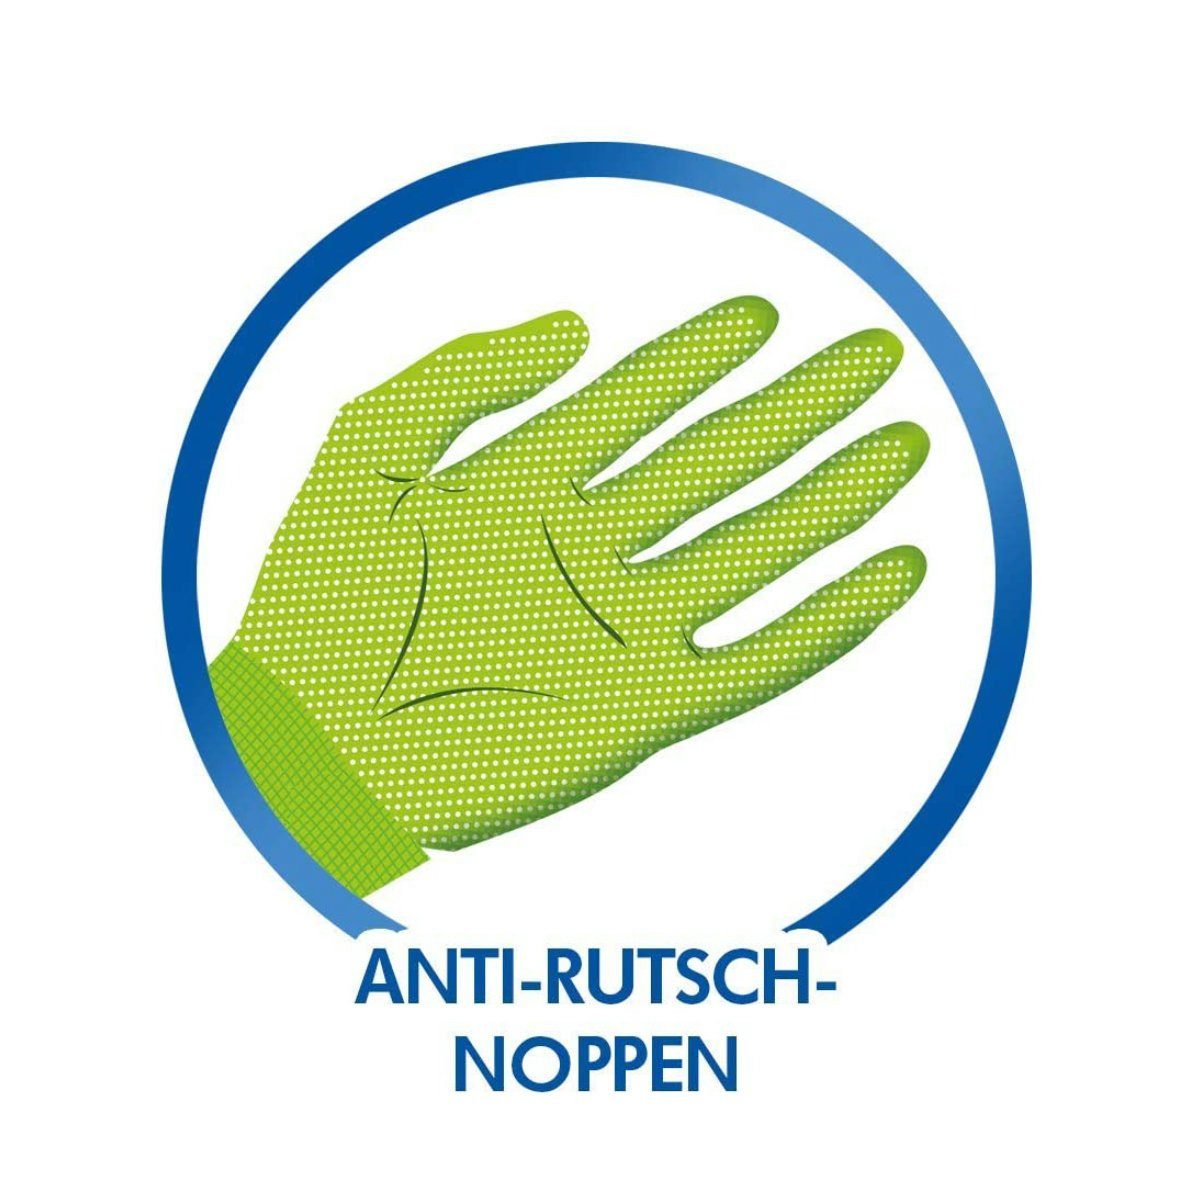 SPONTEX Gartenhandschuhe Aniti-Rutsch Noppen